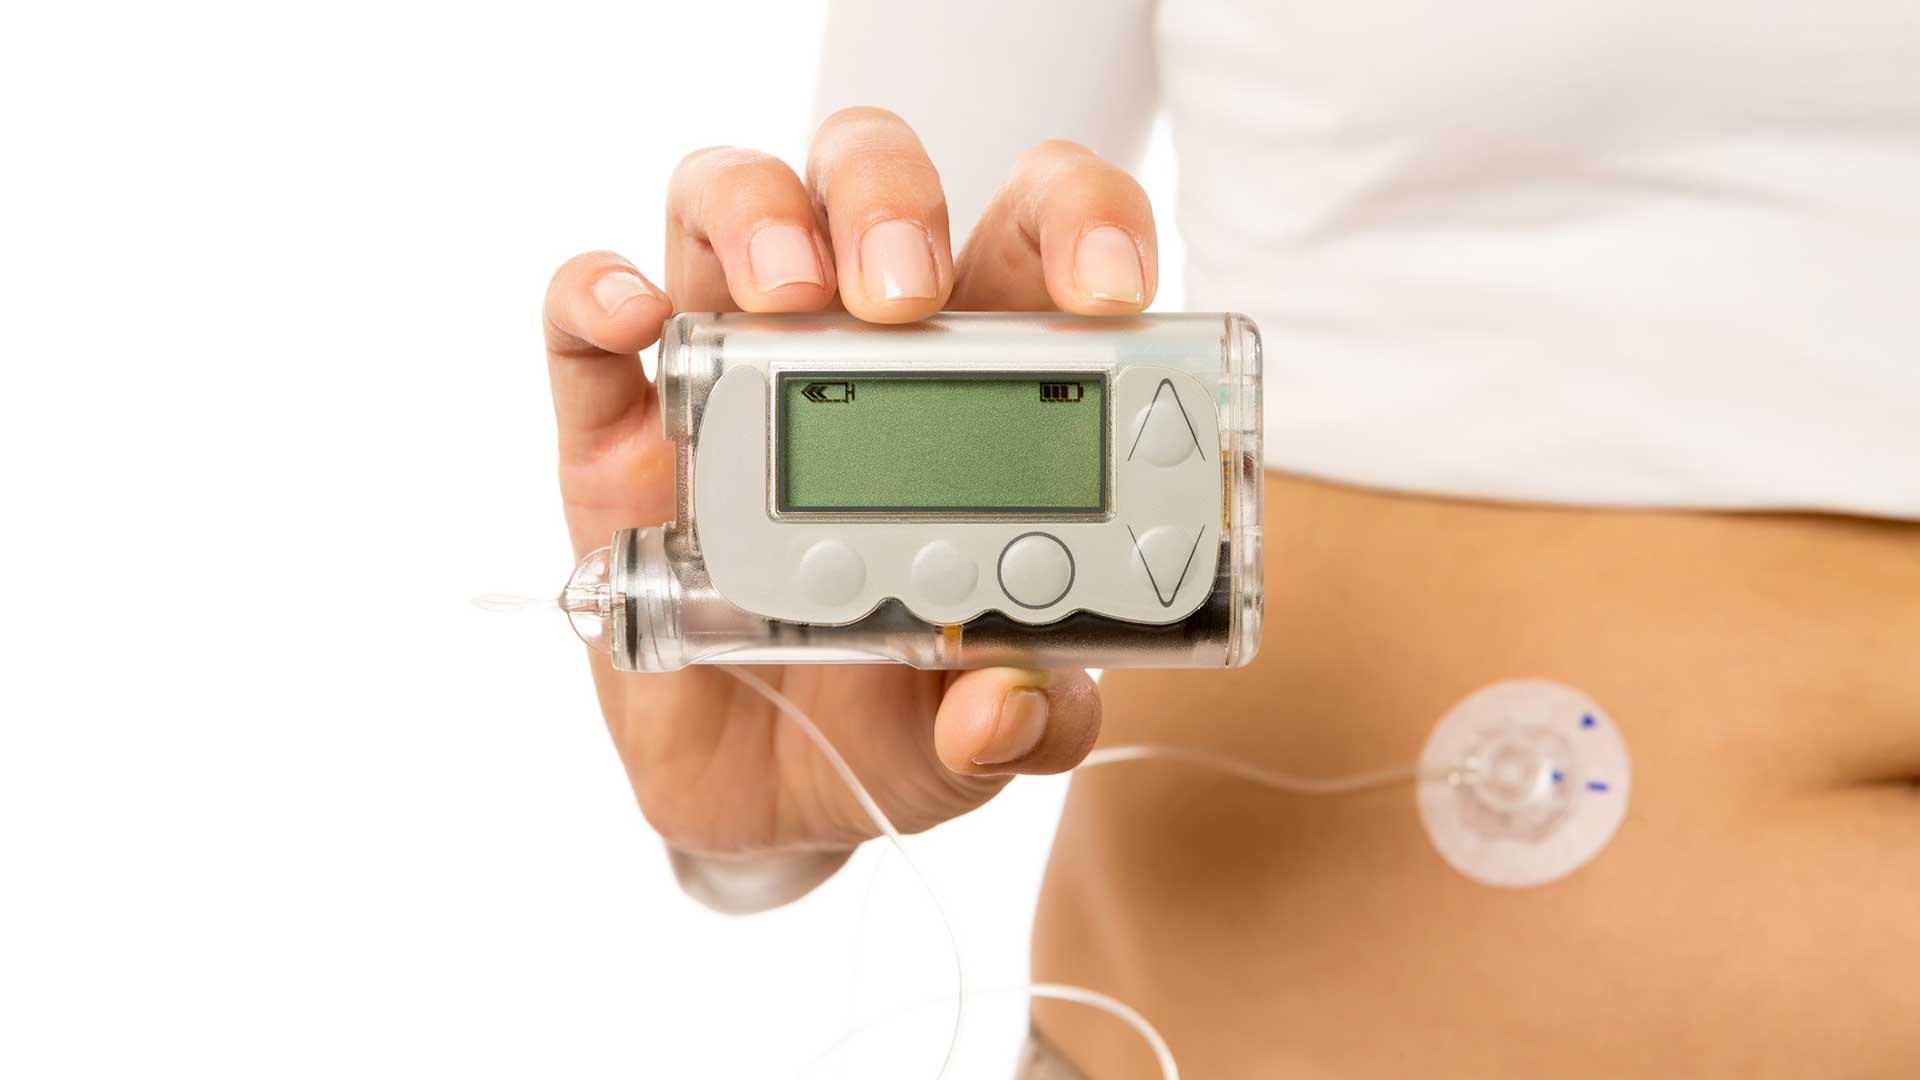 https://gluroo.com/wp-content/uploads/2023/03/all-about-insulin-pumps.jpg